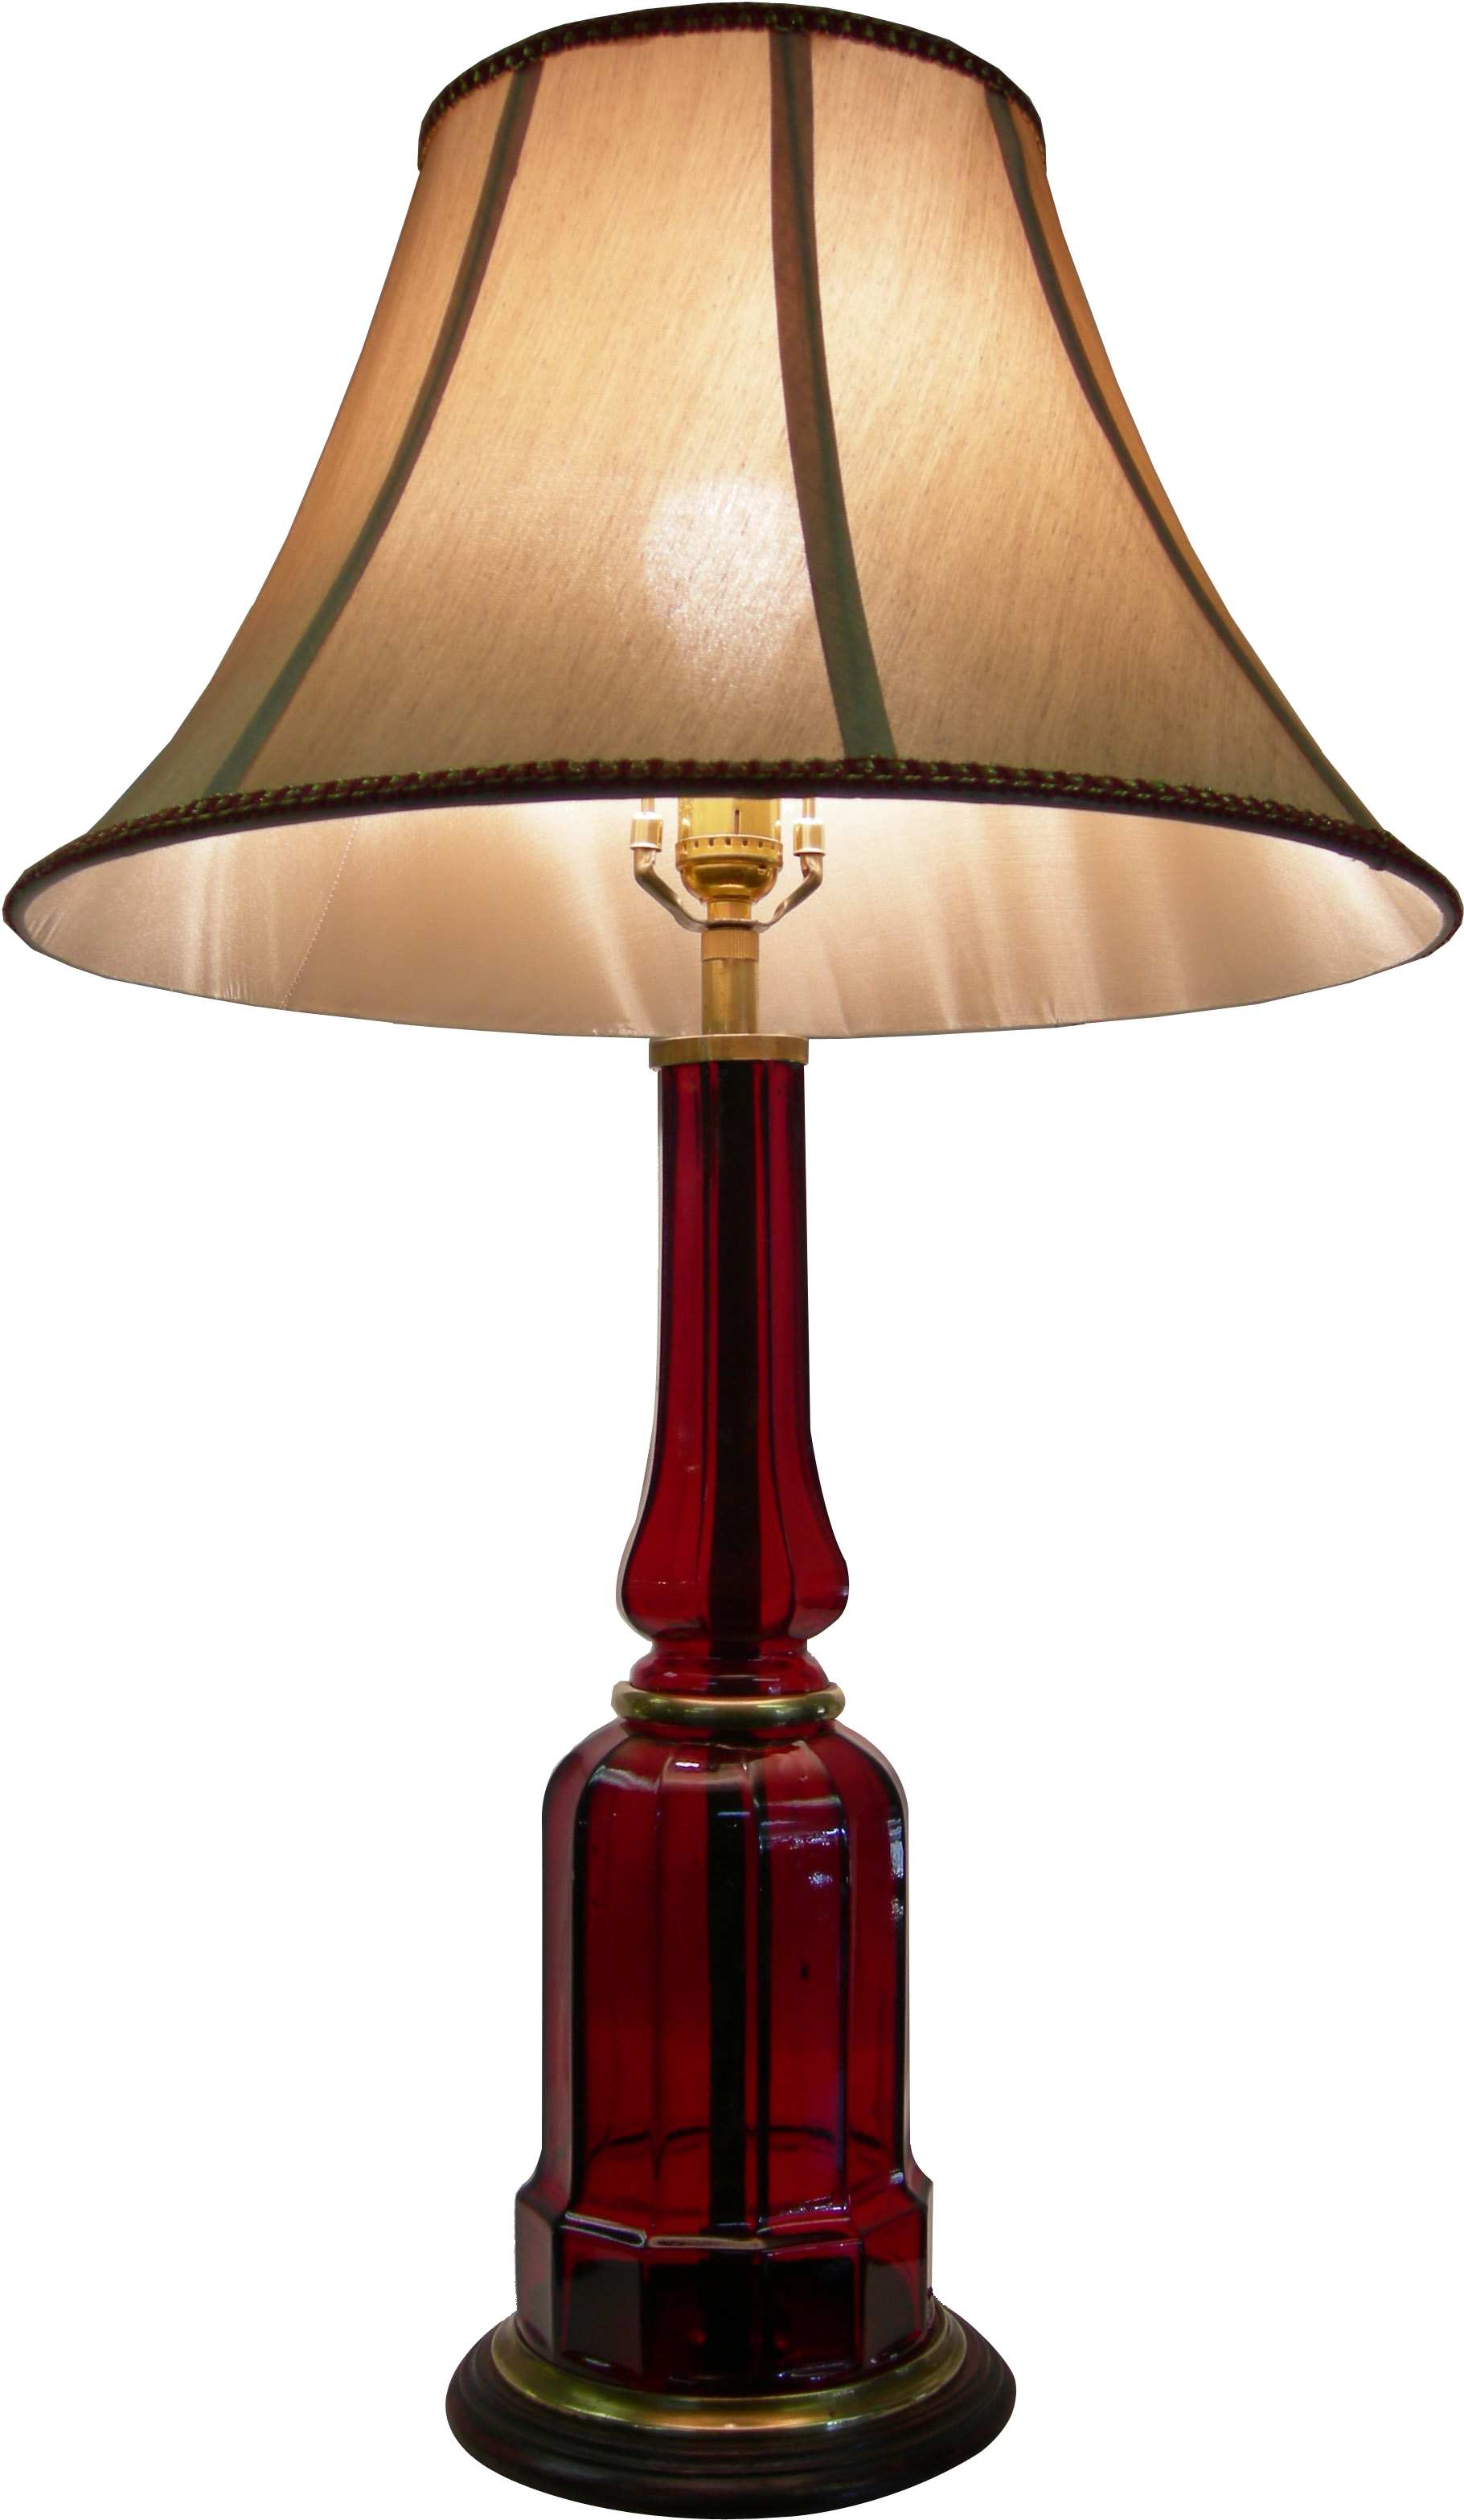 Lamp Png Image - Lamp Png (1950x3264)